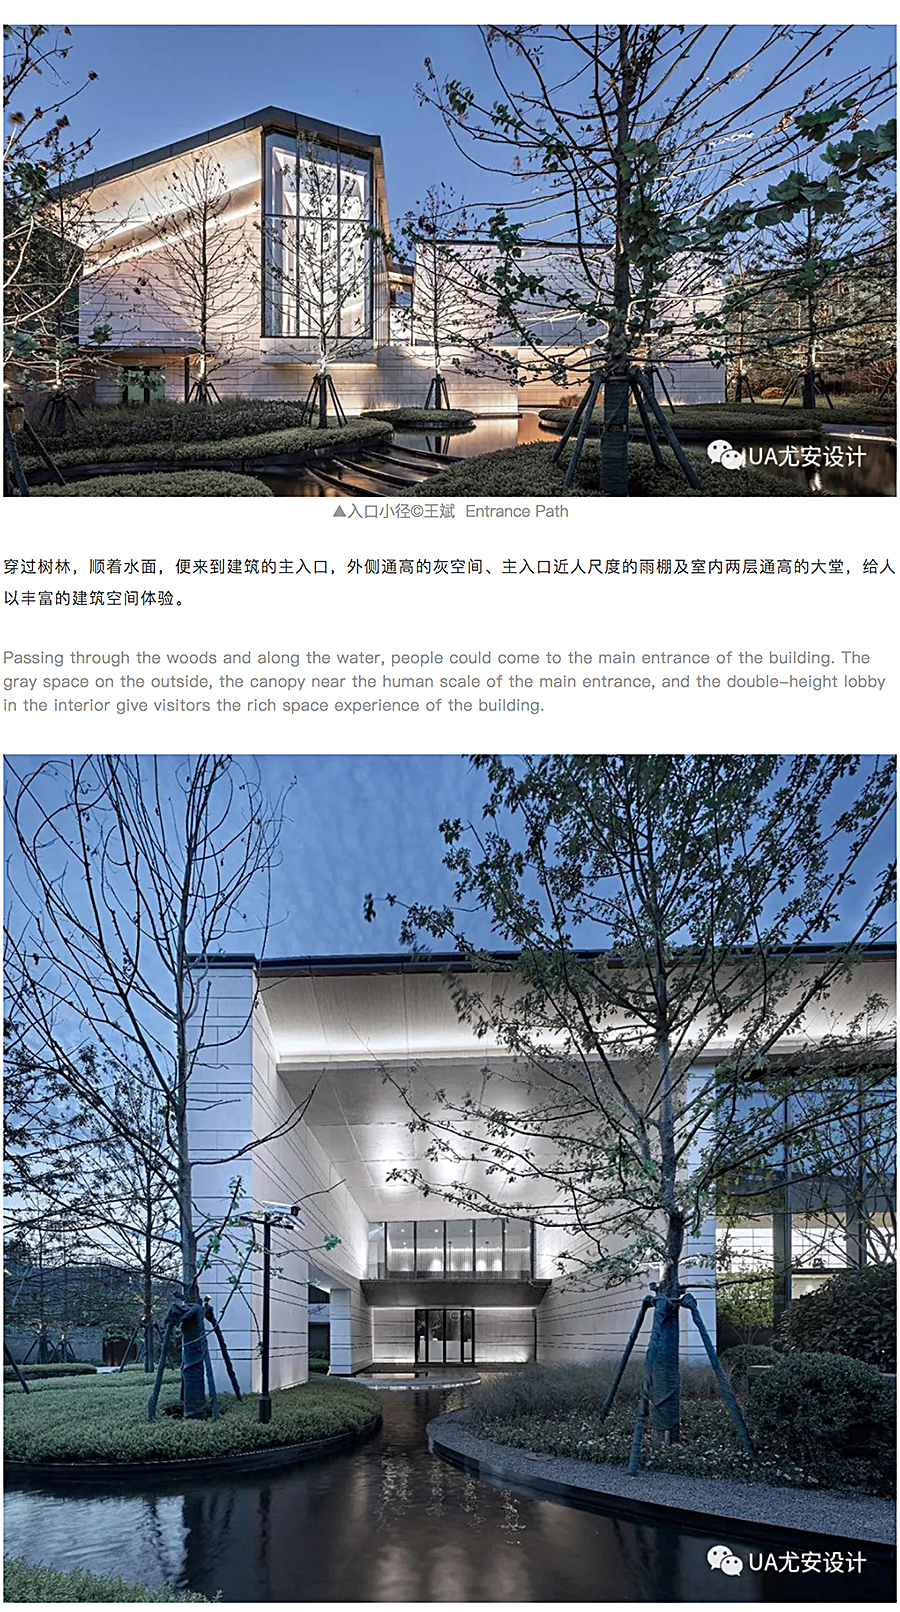 上海中信泰富-_-仁恒海和院展示中心_0007_图层-8.jpg